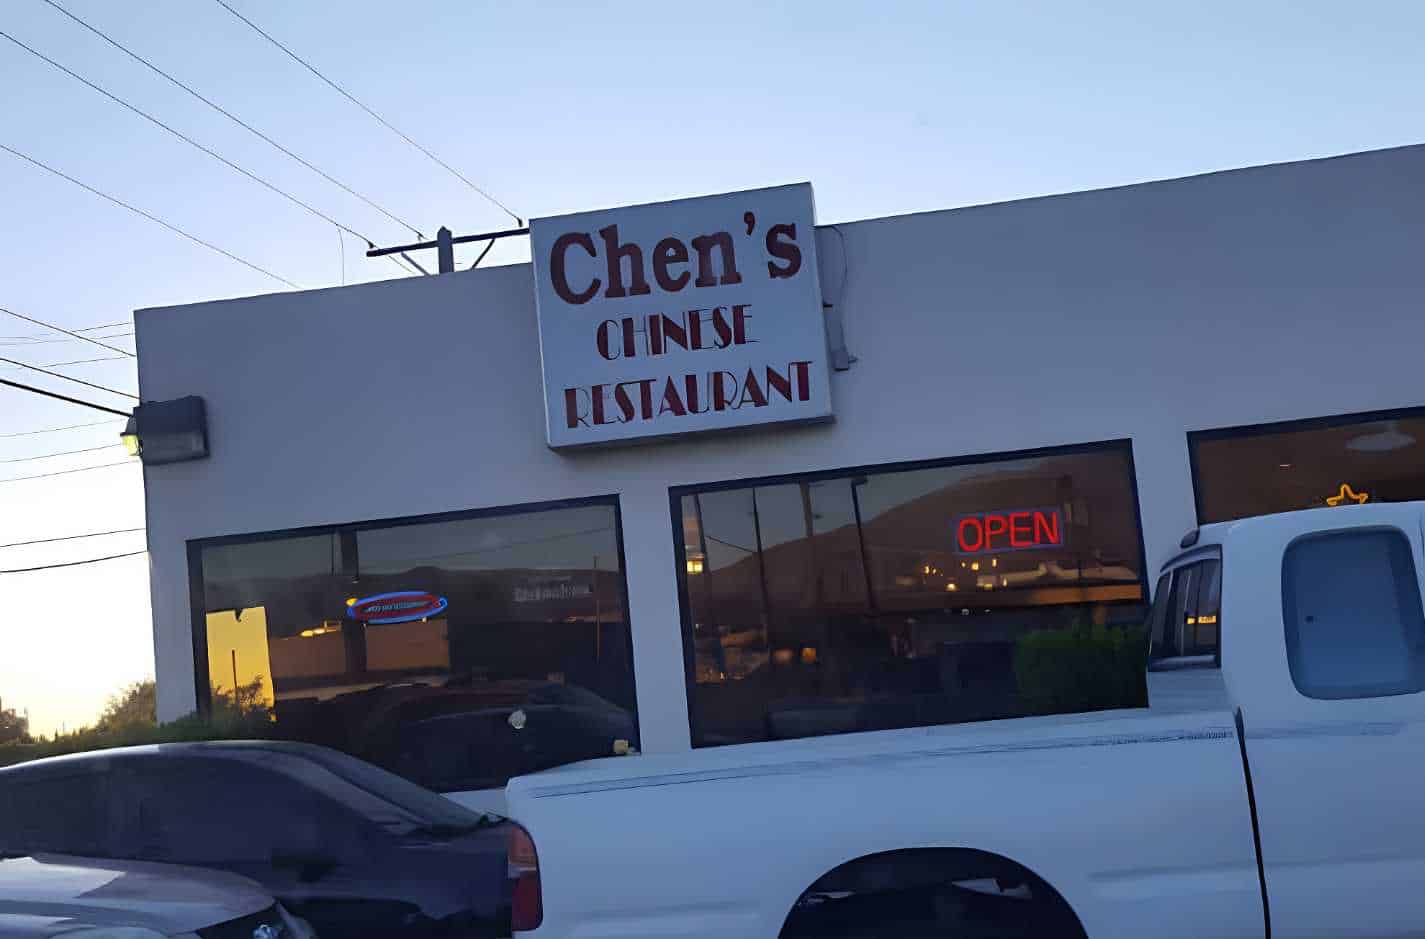 Chen's Chinese Restaurant Best Chinese Restaurants in Albuquerque, NM